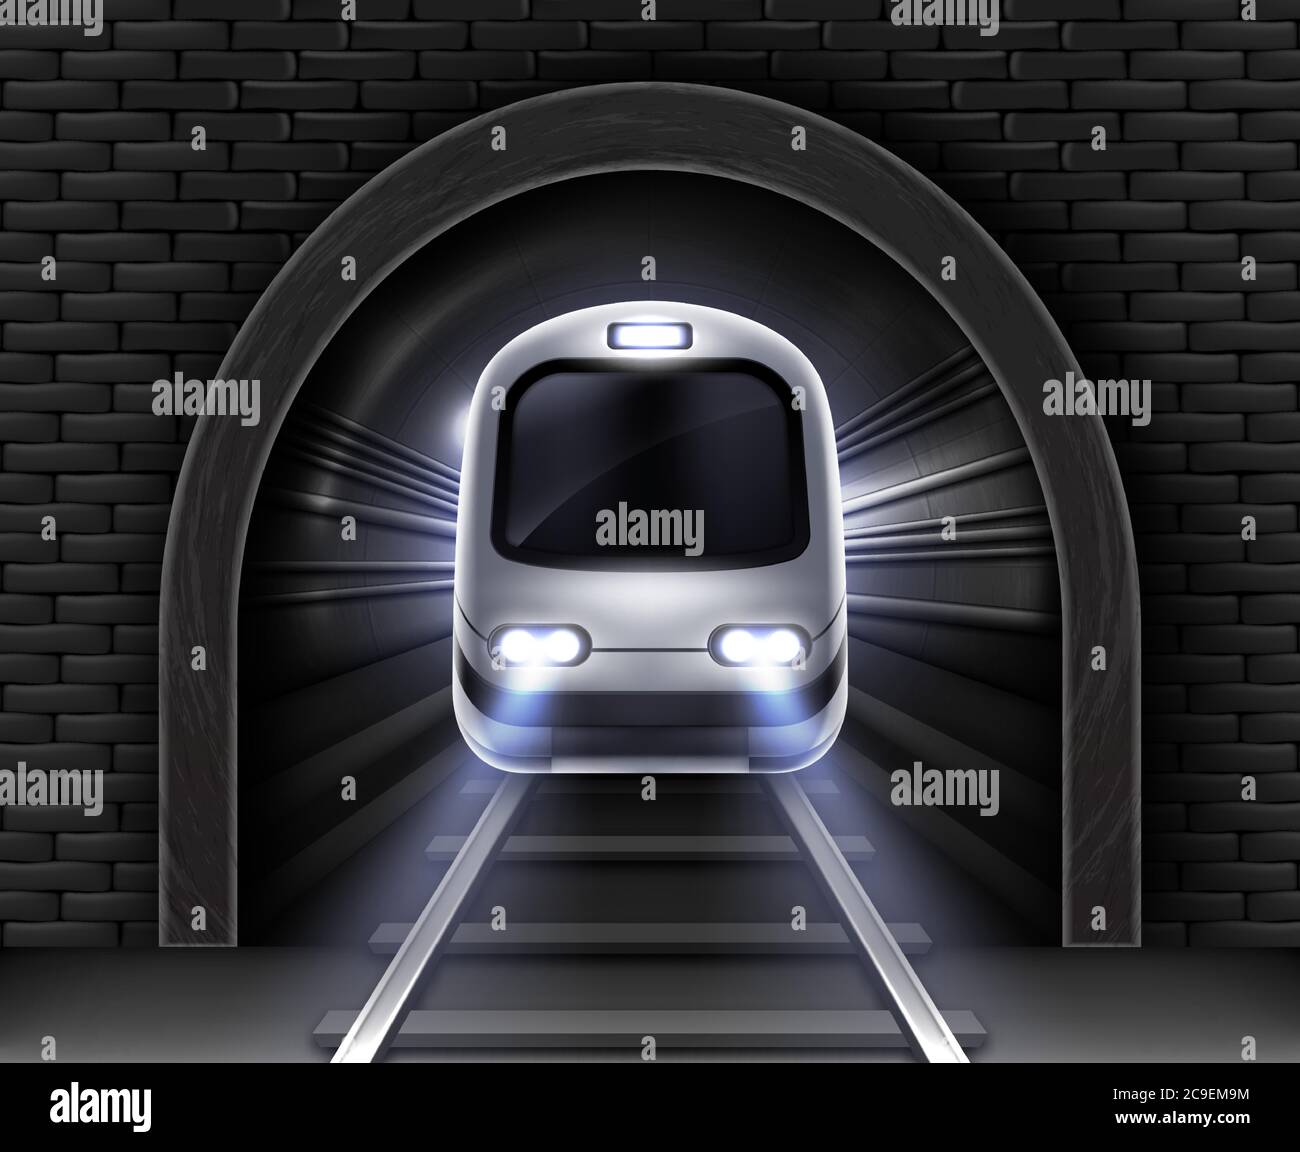 Moderne U-Bahn im Tunnel. Vektor realistische Abbildung des vorderen Waggons des Fahrgastgeschwindigkeitszuges, Steinbogen in Ziegelwand und Schienen. U-Bahn-Elektrobahn Stock Vektor